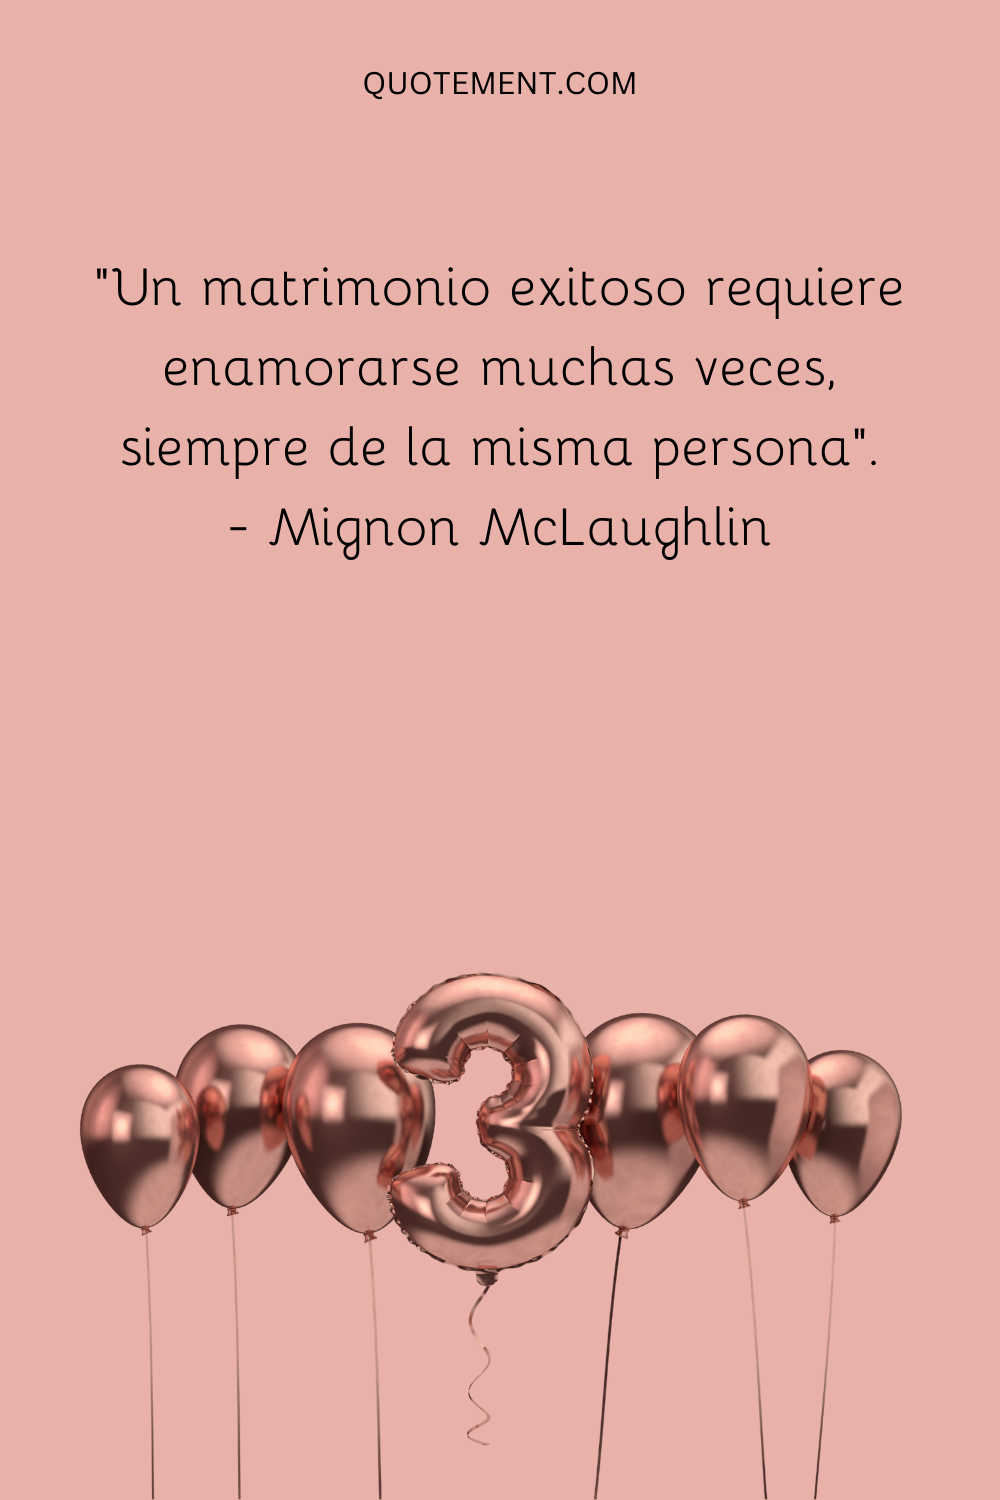 "Un matrimonio exitoso requiere enamorarse muchas veces, siempre de la misma persona". - Mignon McLaughlin